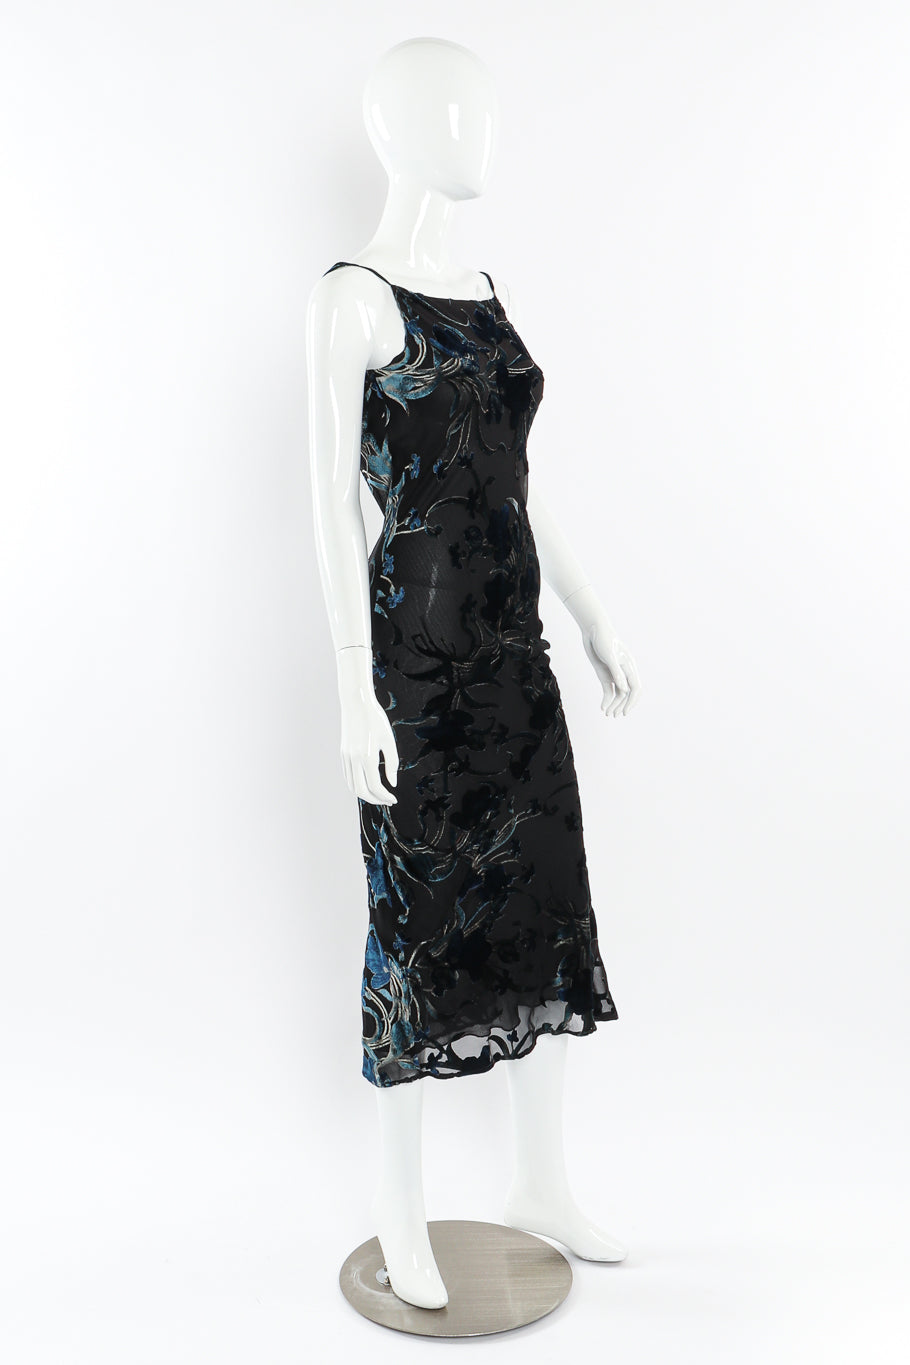 Velvet burnout slip dress by Richard Tyler on mannequin side @recessla